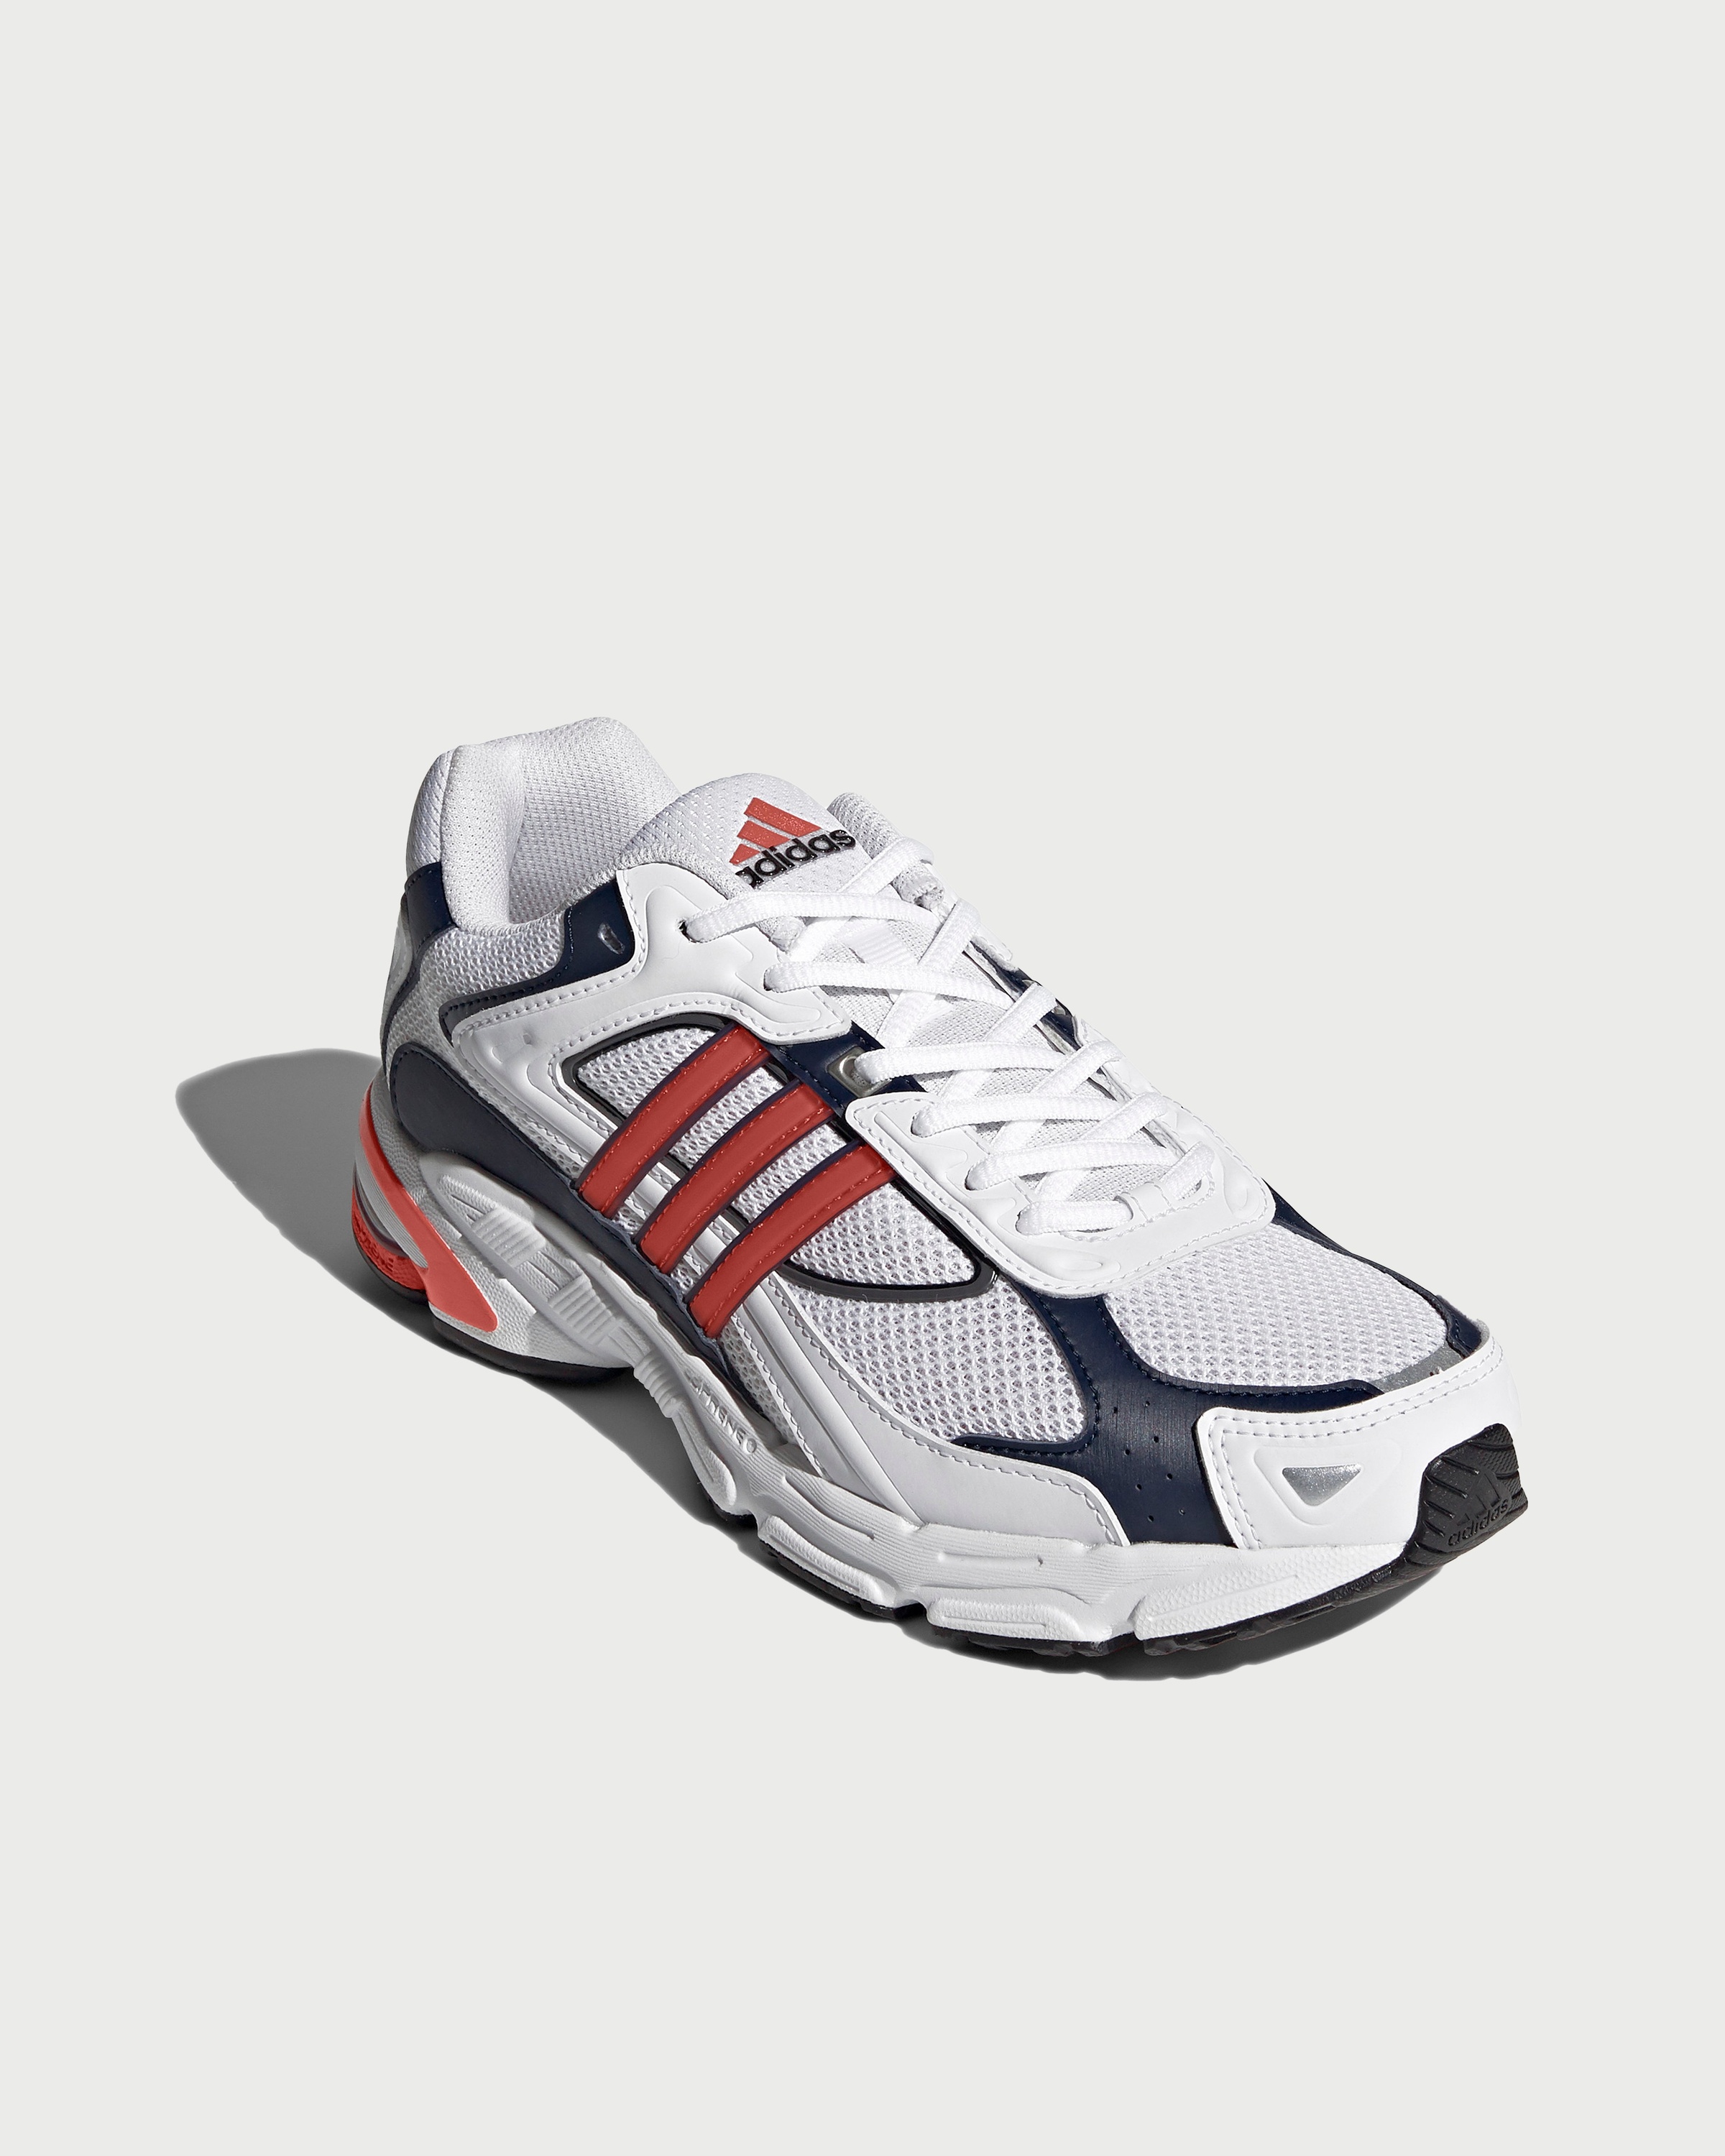 Adidas – Response CL White/Orange - Sneakers - White - Image 3